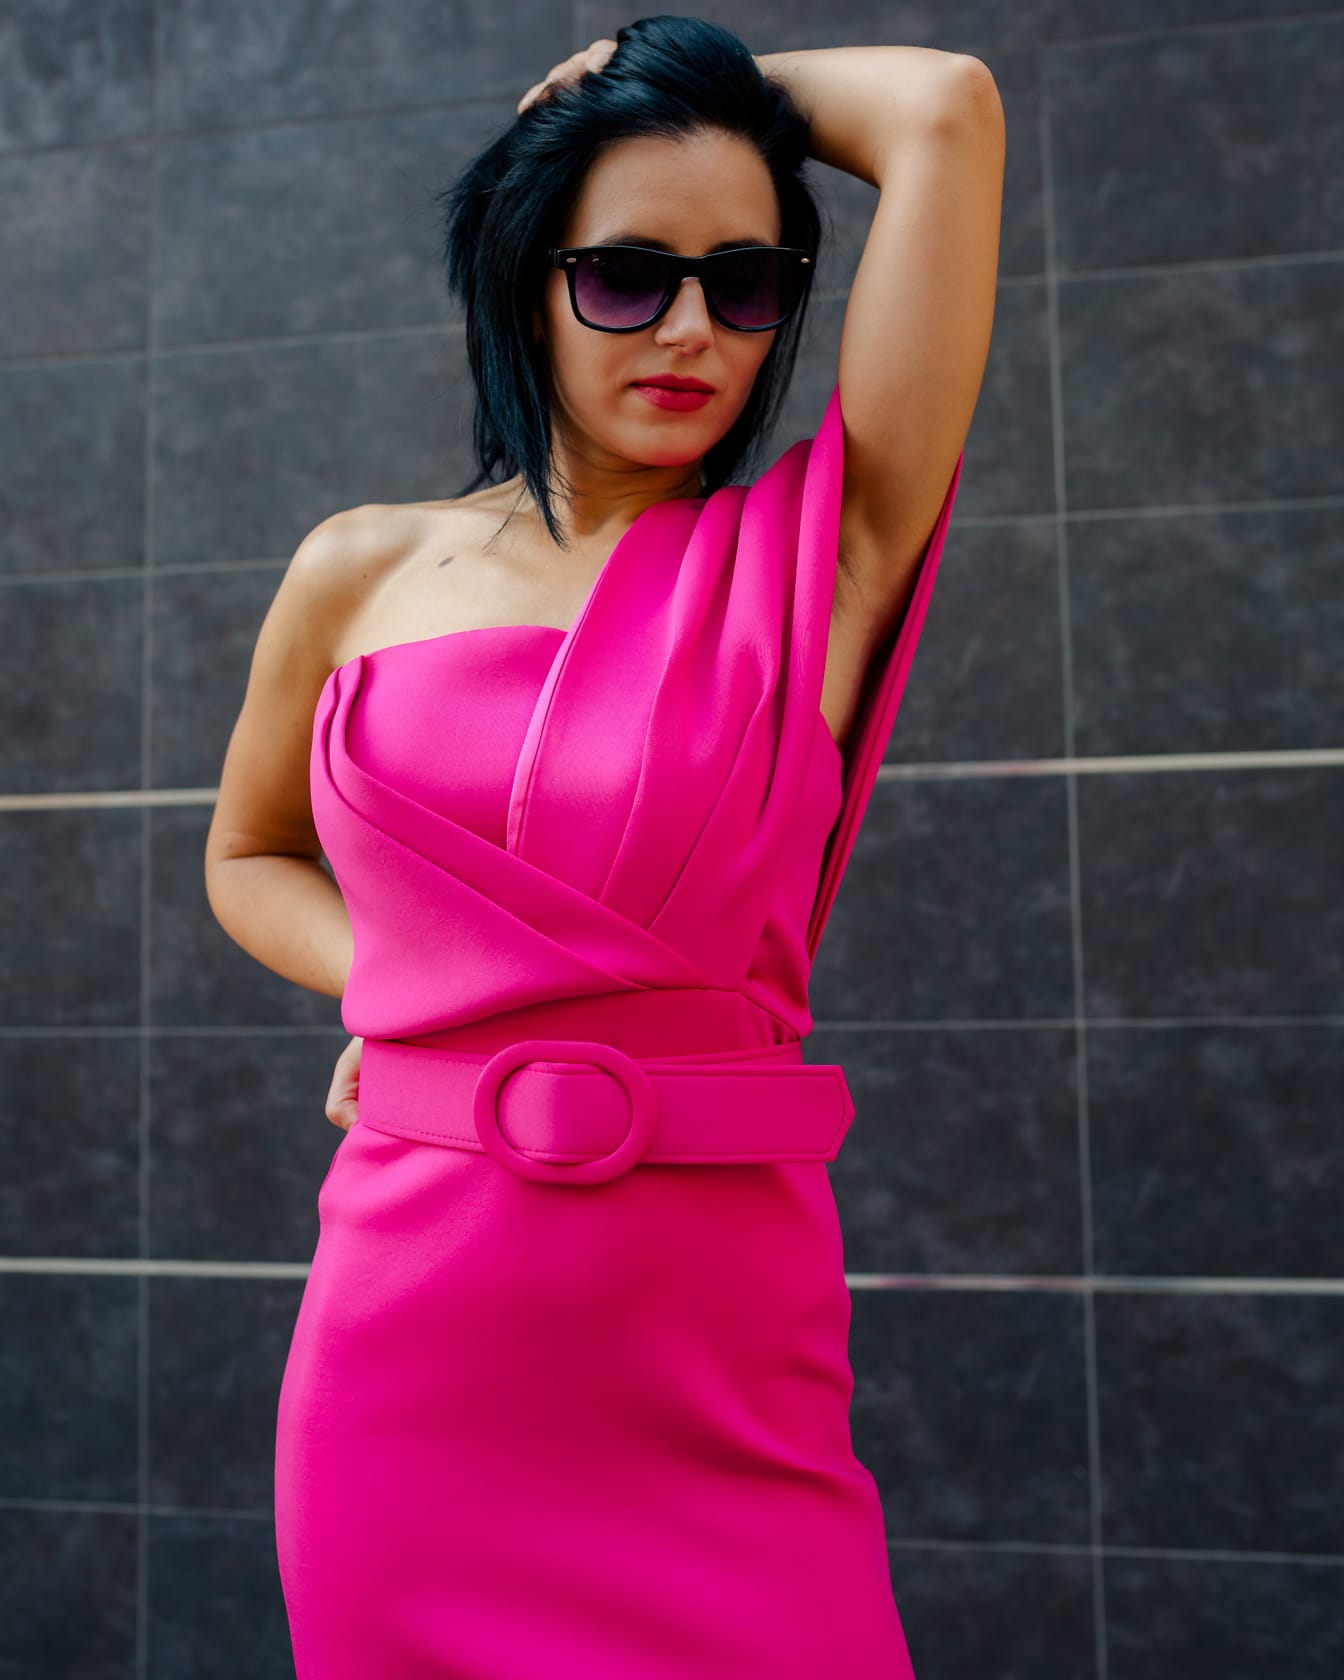 Verbluffend mooie onderneemster poseert verleidelijk met haar hand in haar haar in een modieuze nieuwe roze jurk